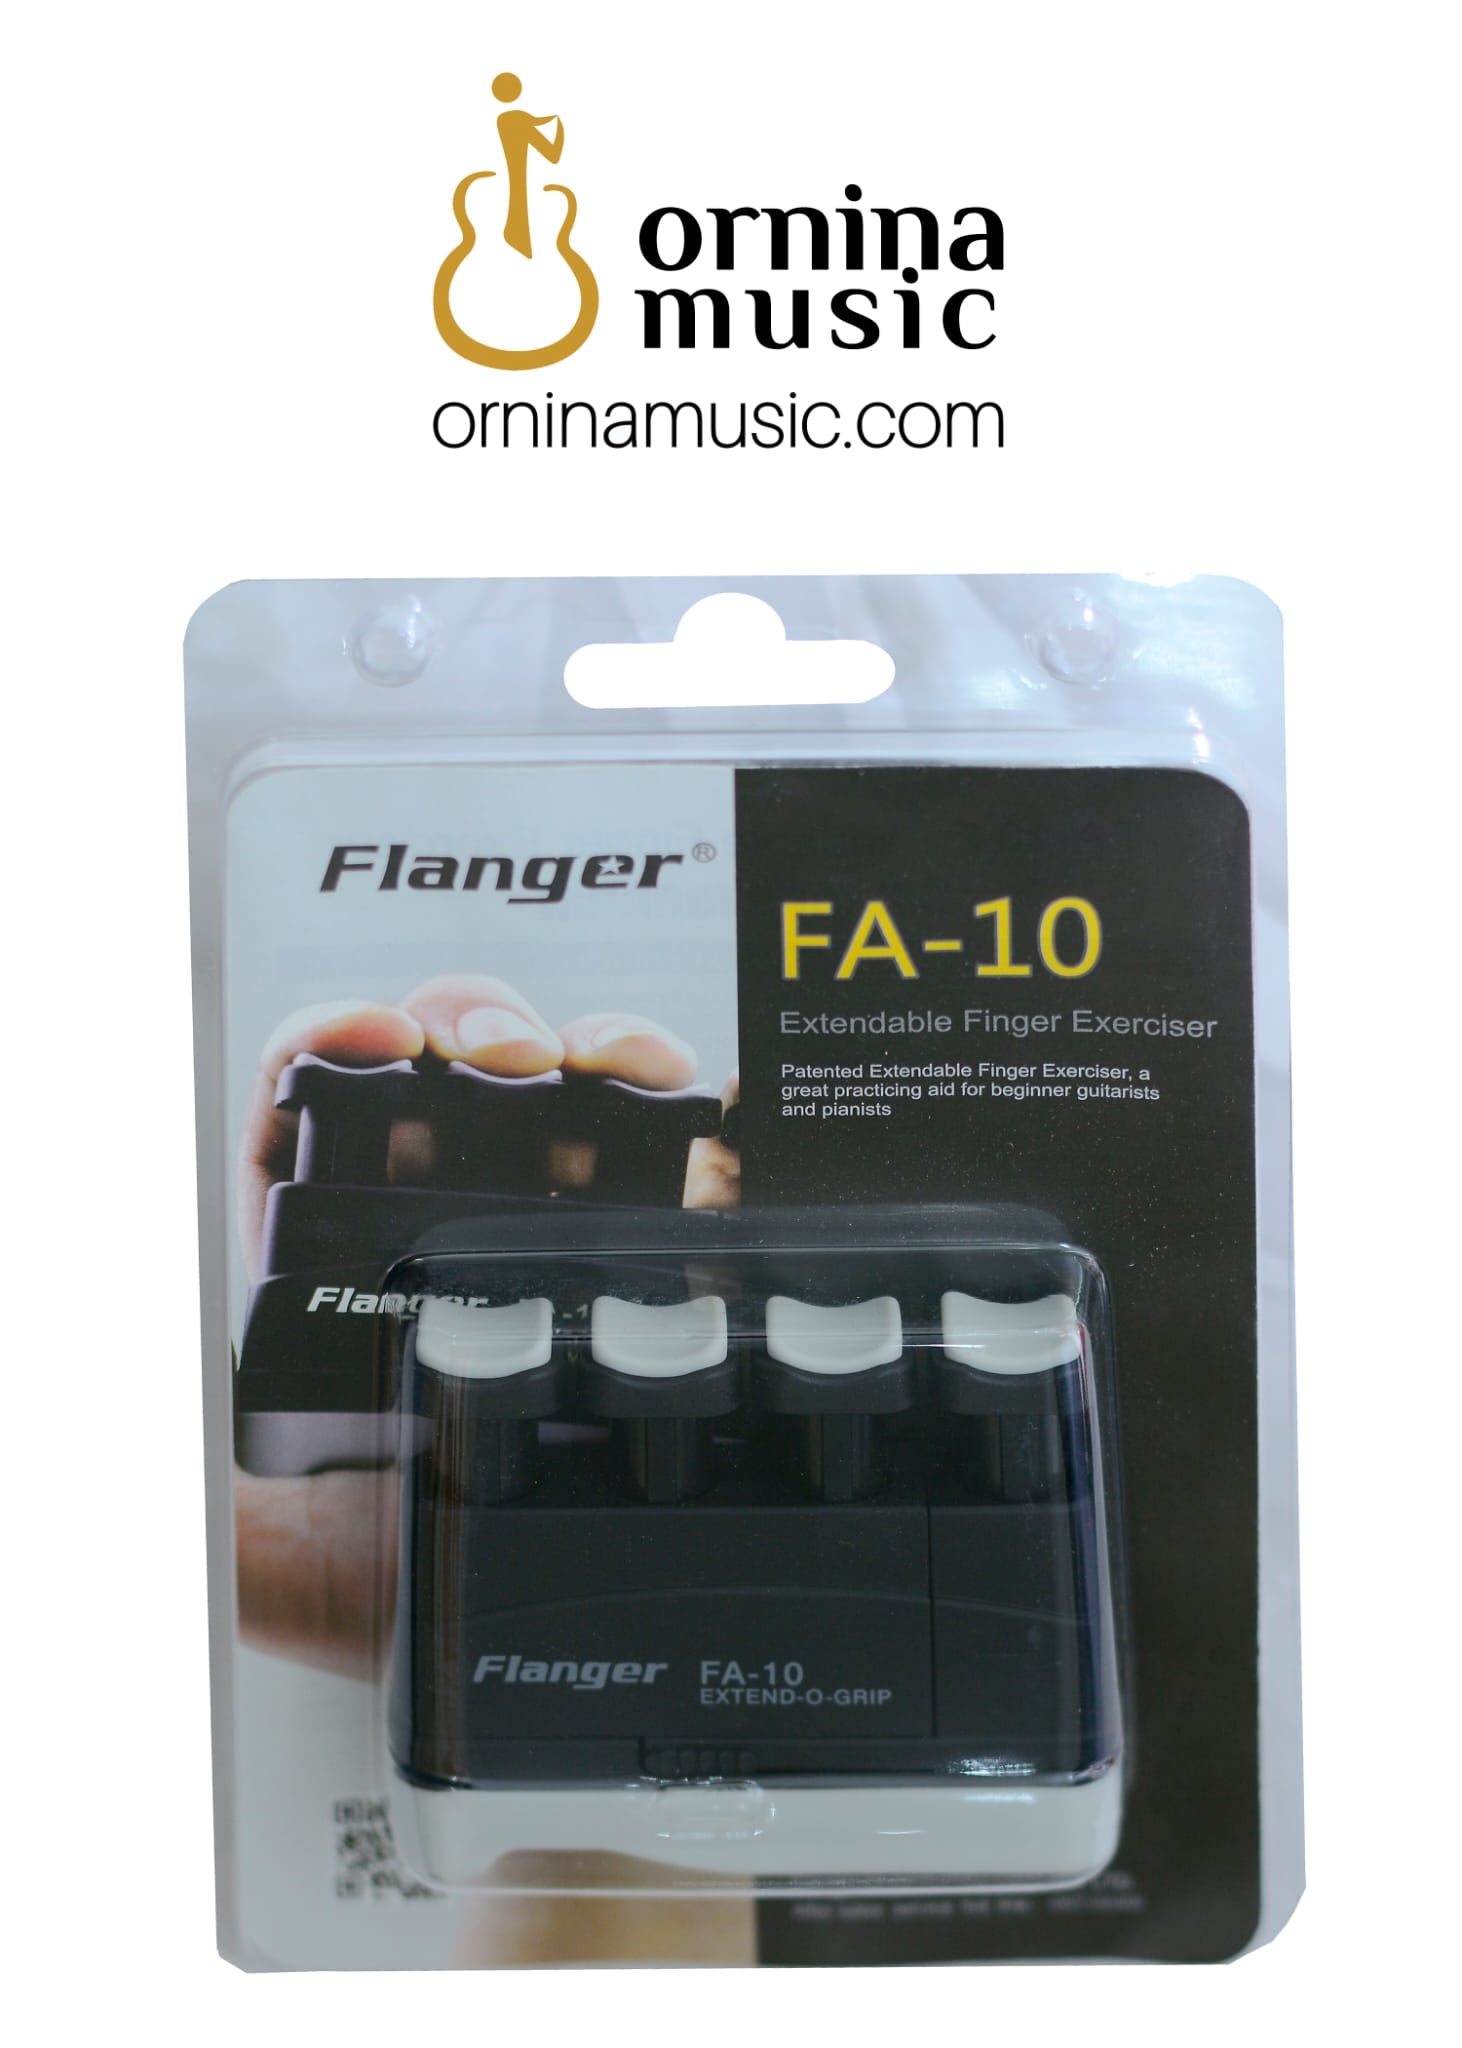 Extendable Finger Exerciser - Flanger